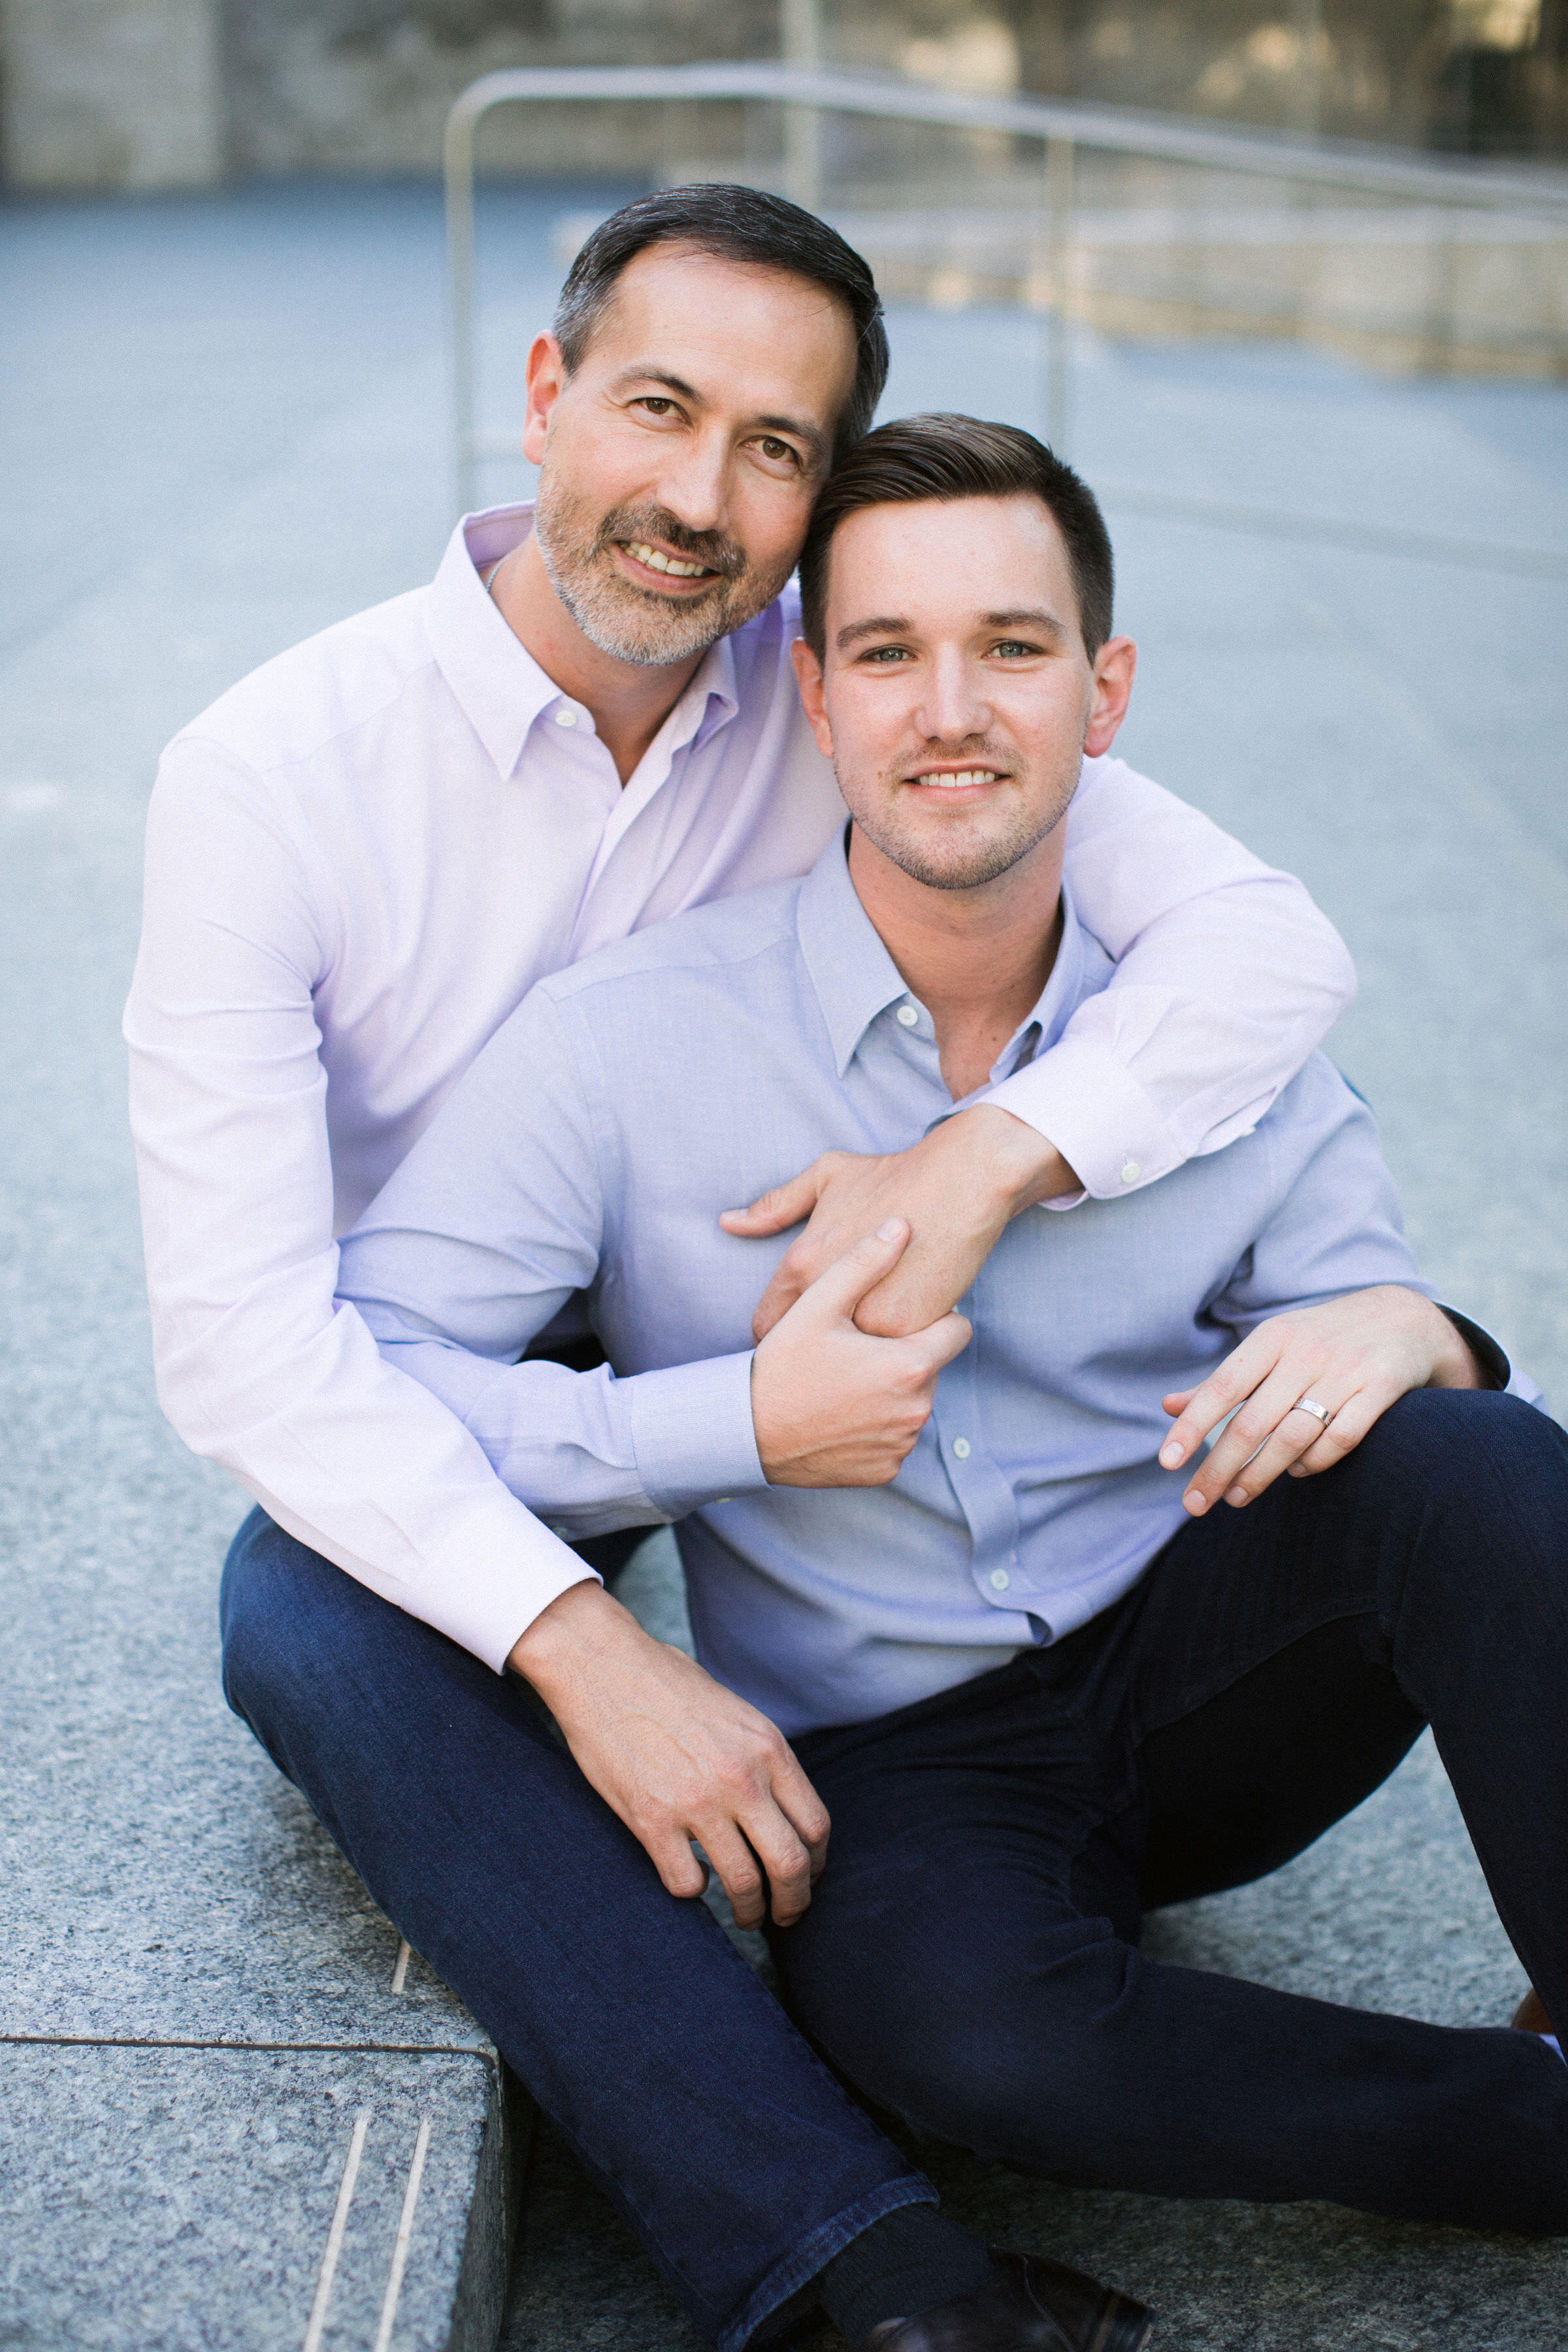 Richard & Ryan: Dallas Dads get Engaged — MEN'S VOWS